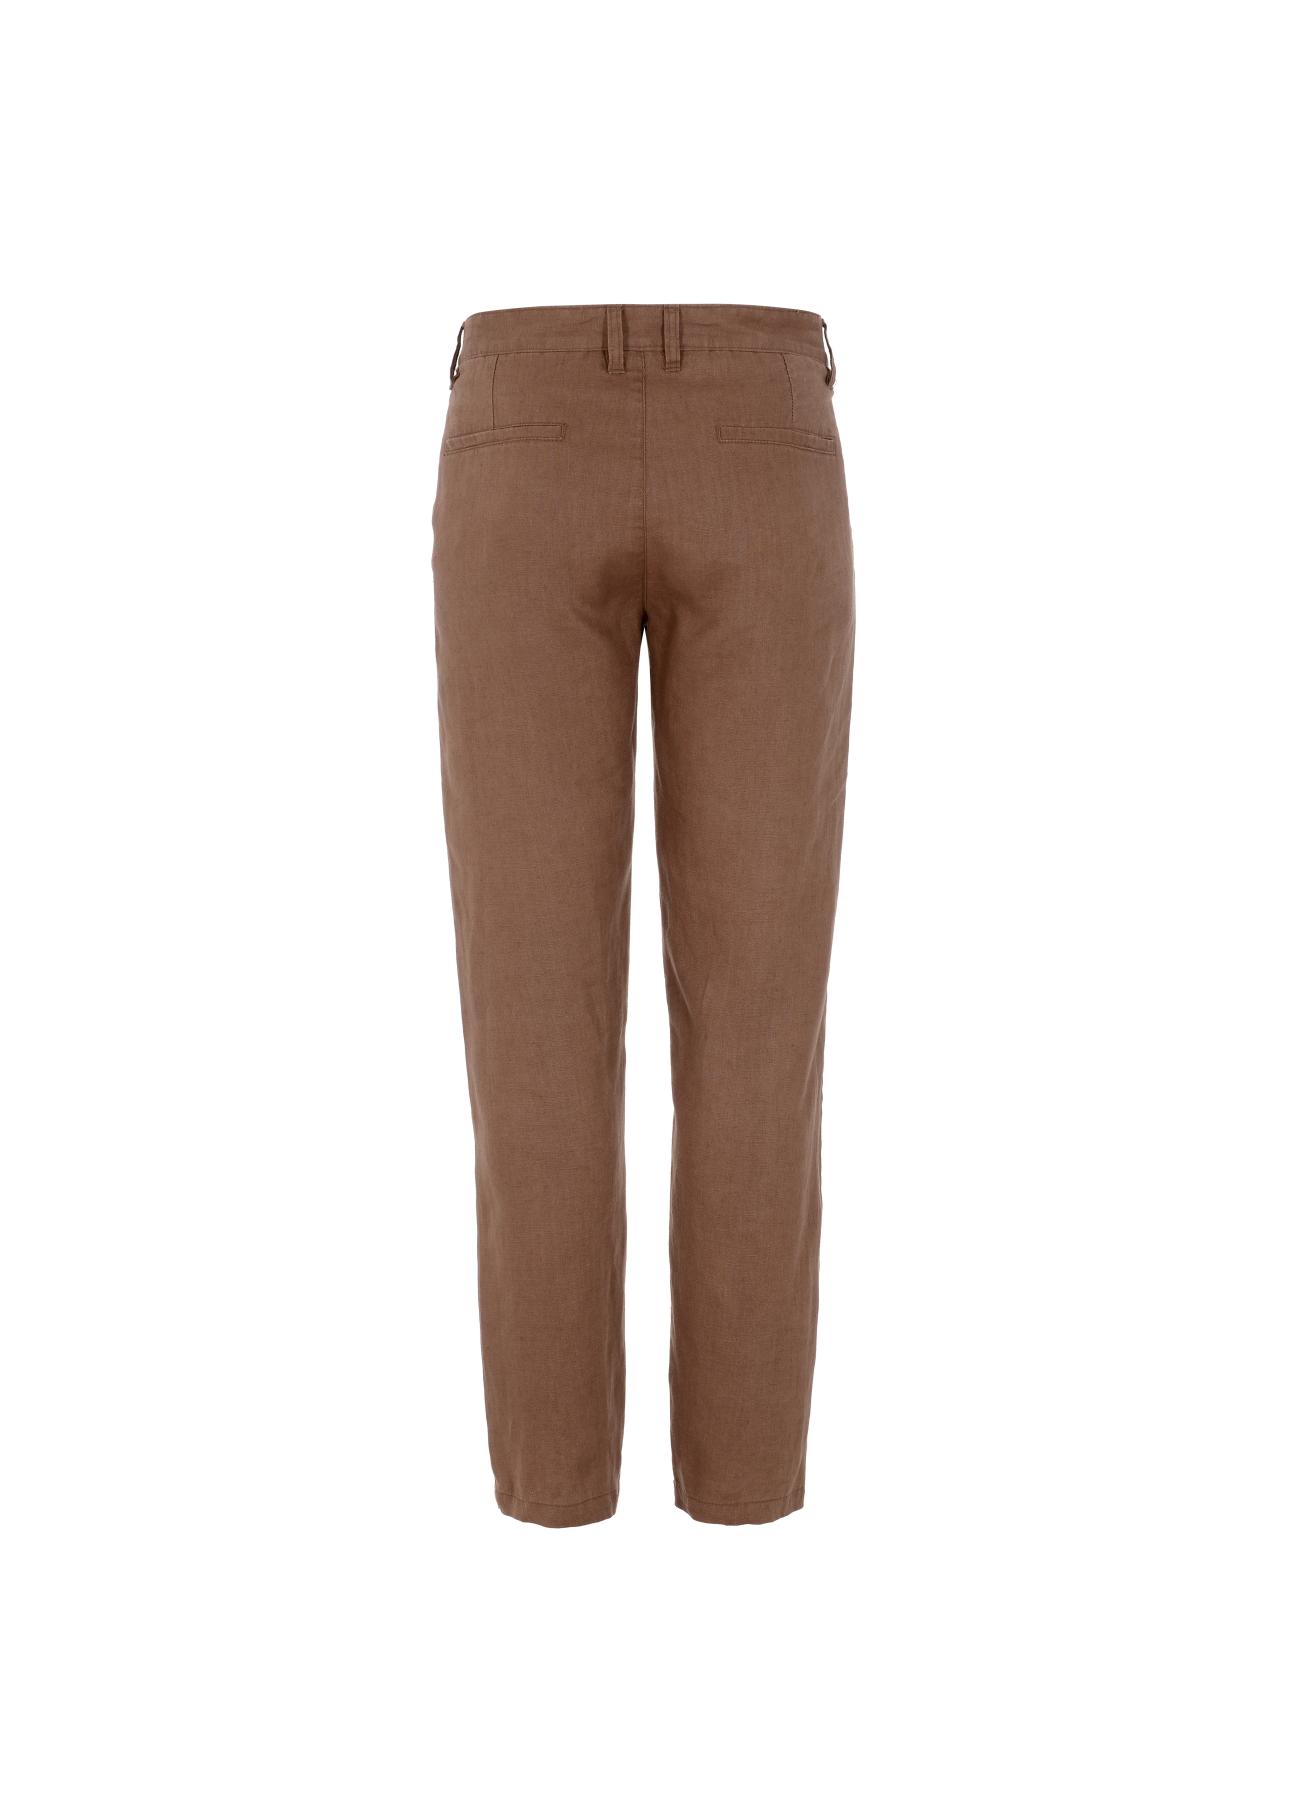 Brązowe lniane spodnie męskie SPOMT-0075-89(W23)